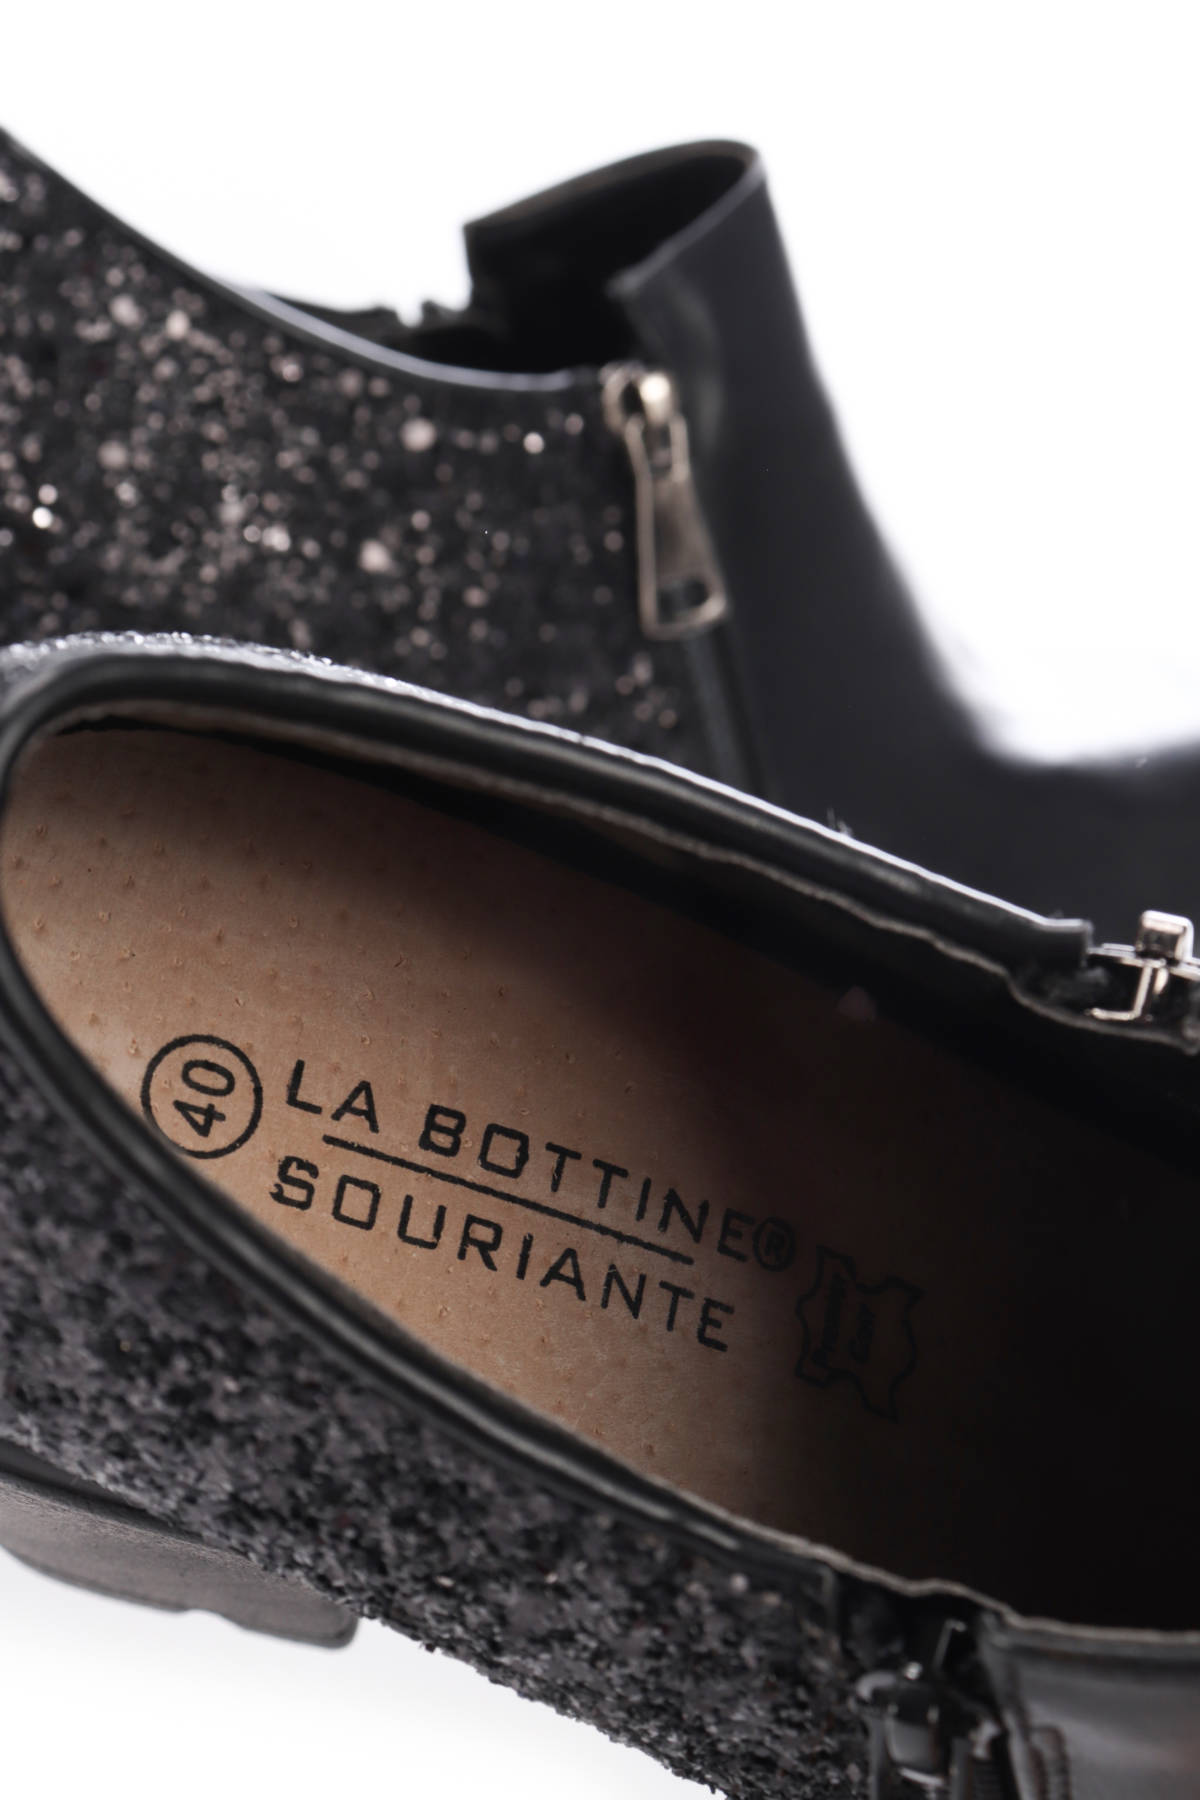 Обувки на ток LA BOTTINE SOURIANTE4